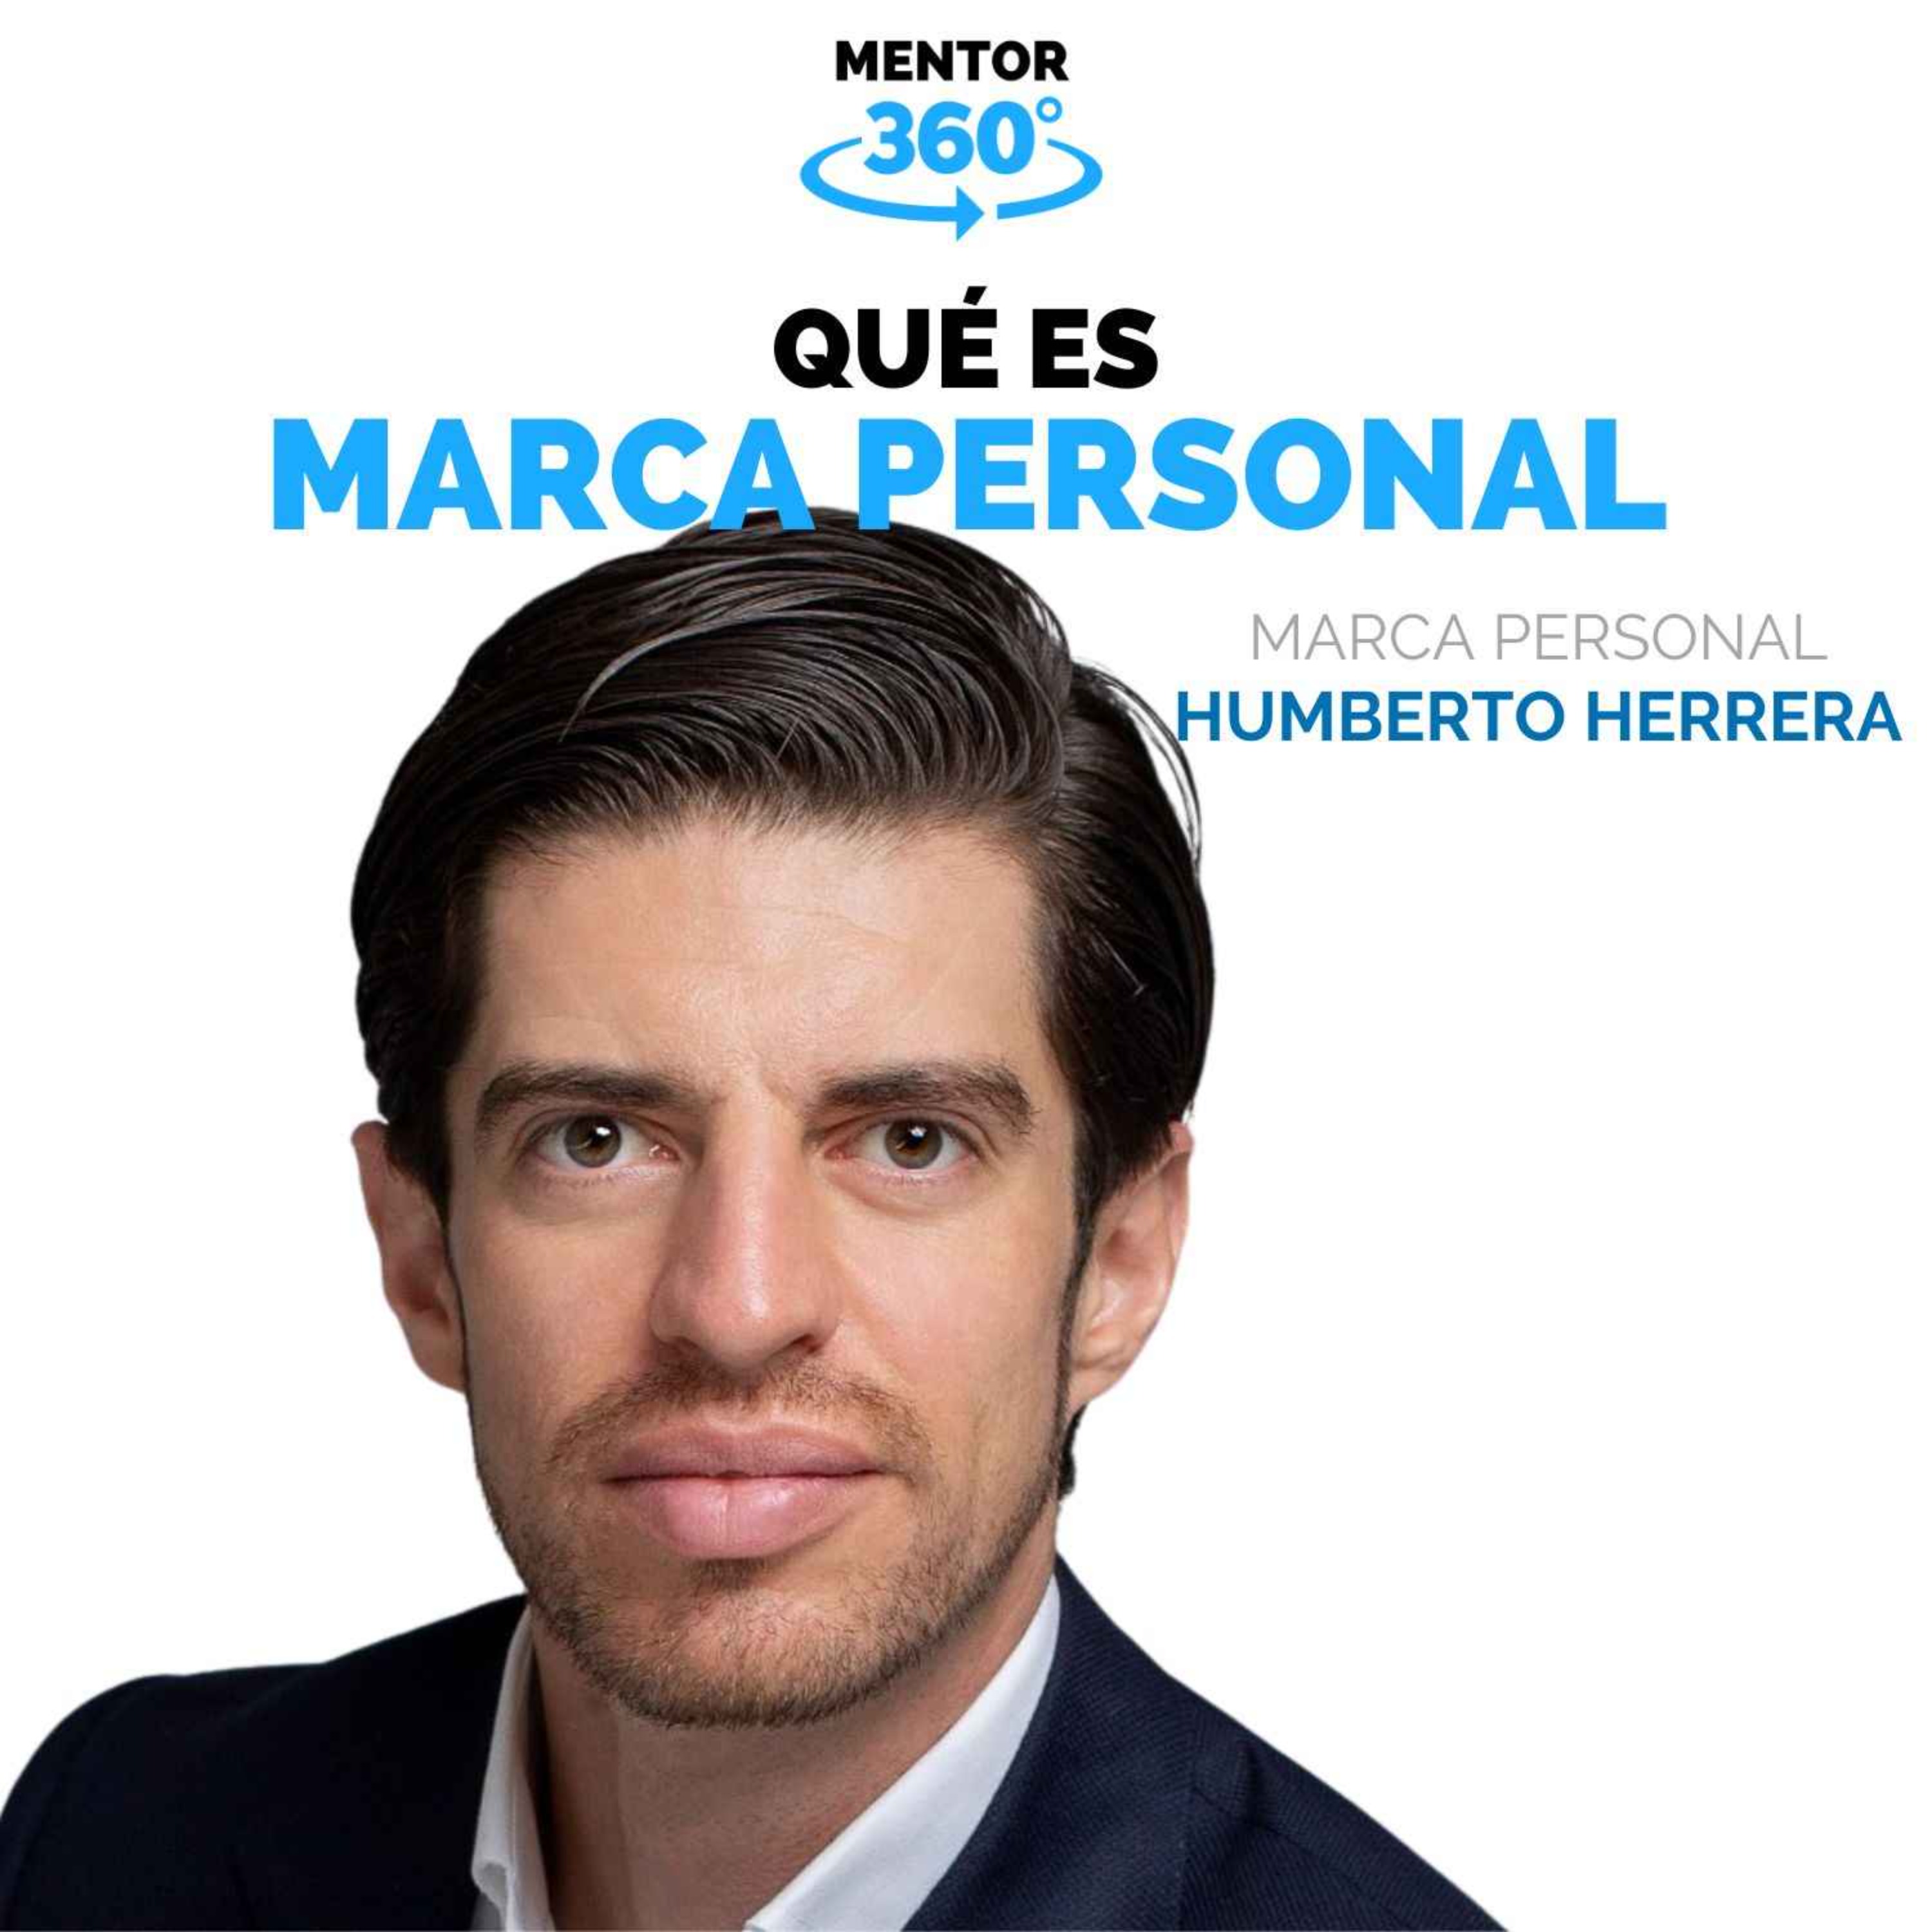 Qué Es Marca Personal - Humberto Herrera - Marca Personal - MENTOR360